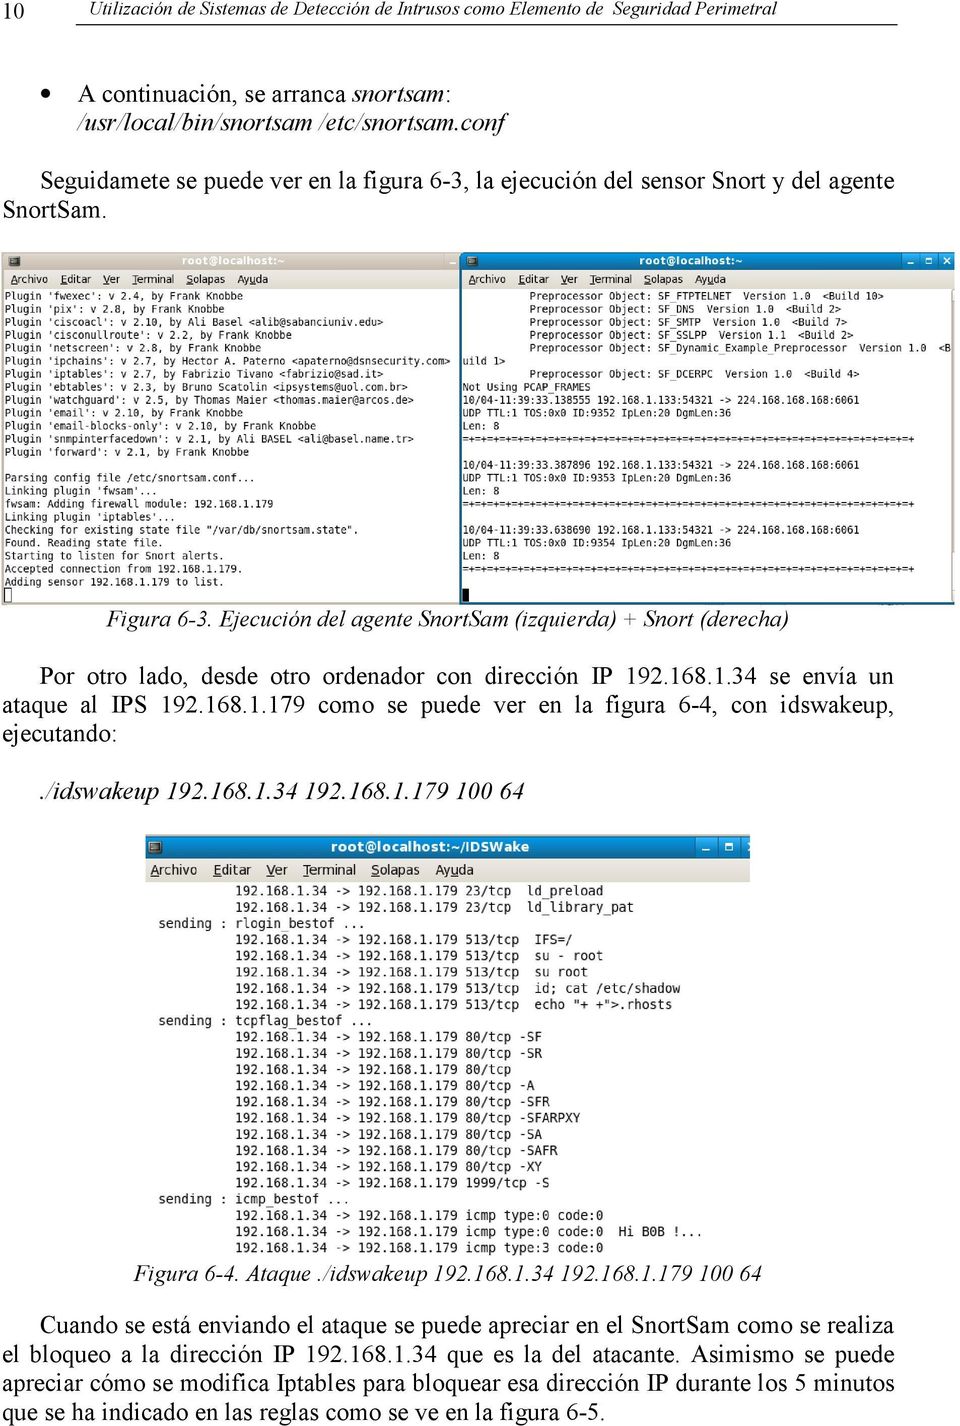 Ejecución del agente SnortSam (izquierda) + Snort (derecha) Por otro lado, desde otro ordenador con dirección IP 192.168.1.34 se envía un ataque al IPS 192.168.1.179 como se puede ver en la figura 6-4, con idswakeup, ejecutando:.